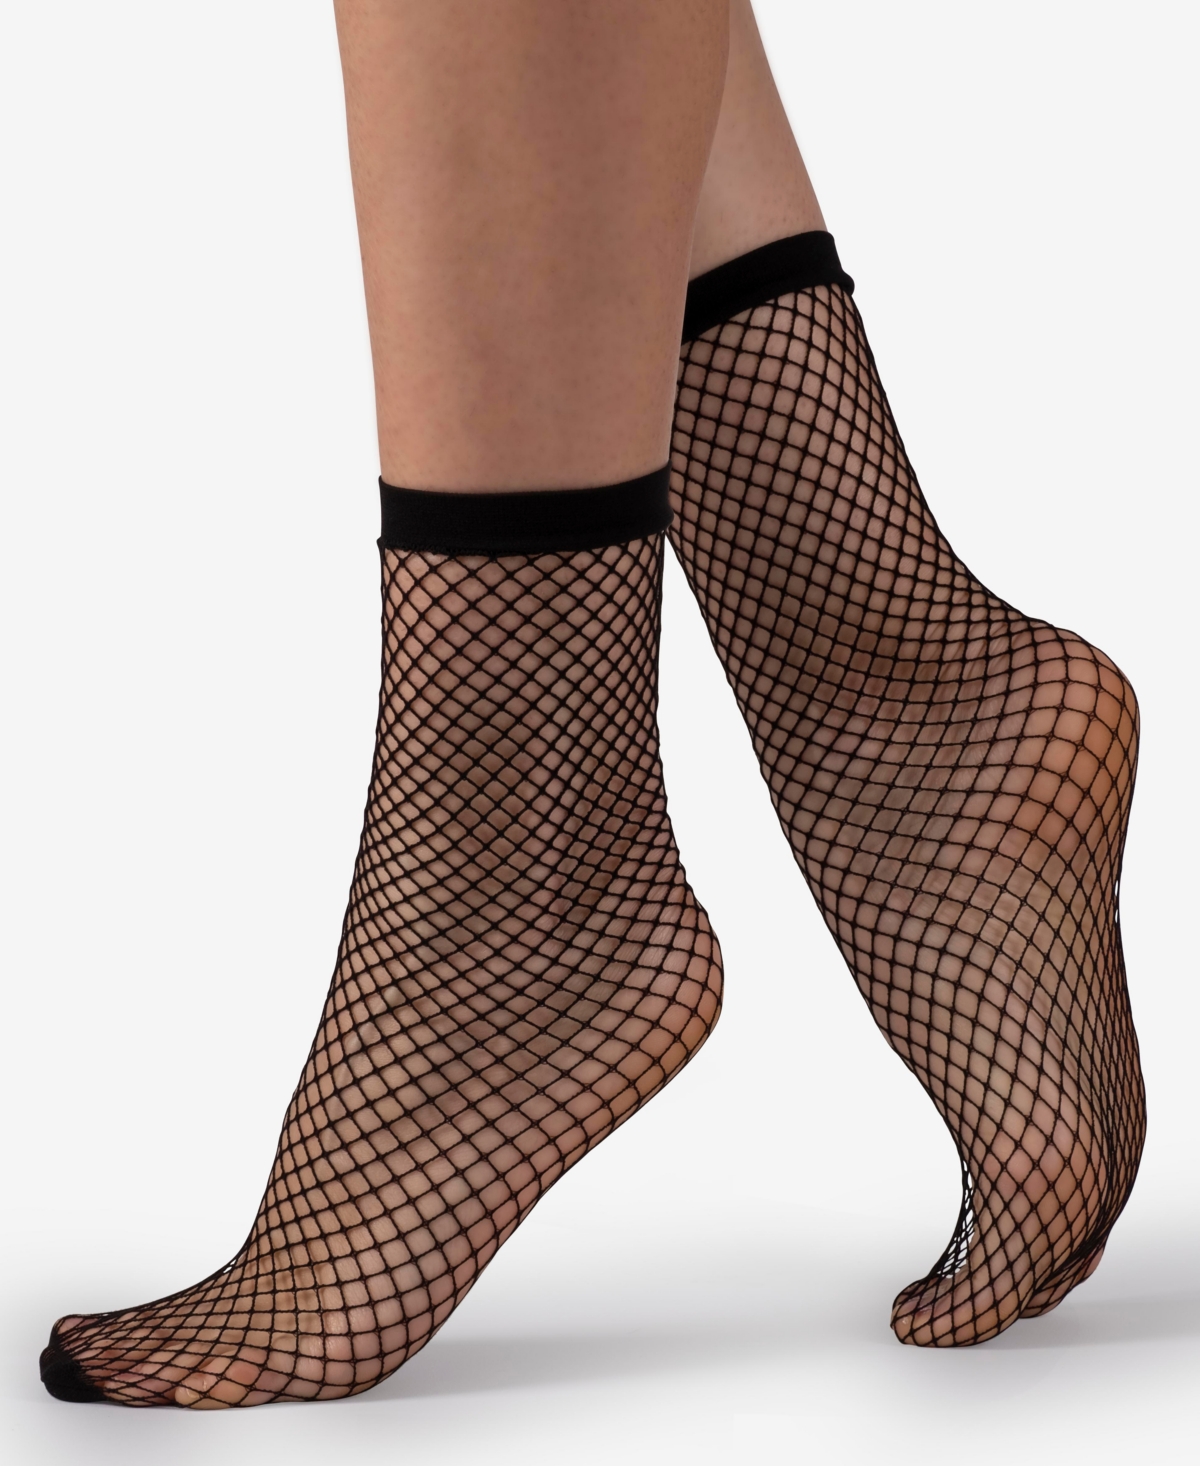 Italian Made Fishnet Socks - Black